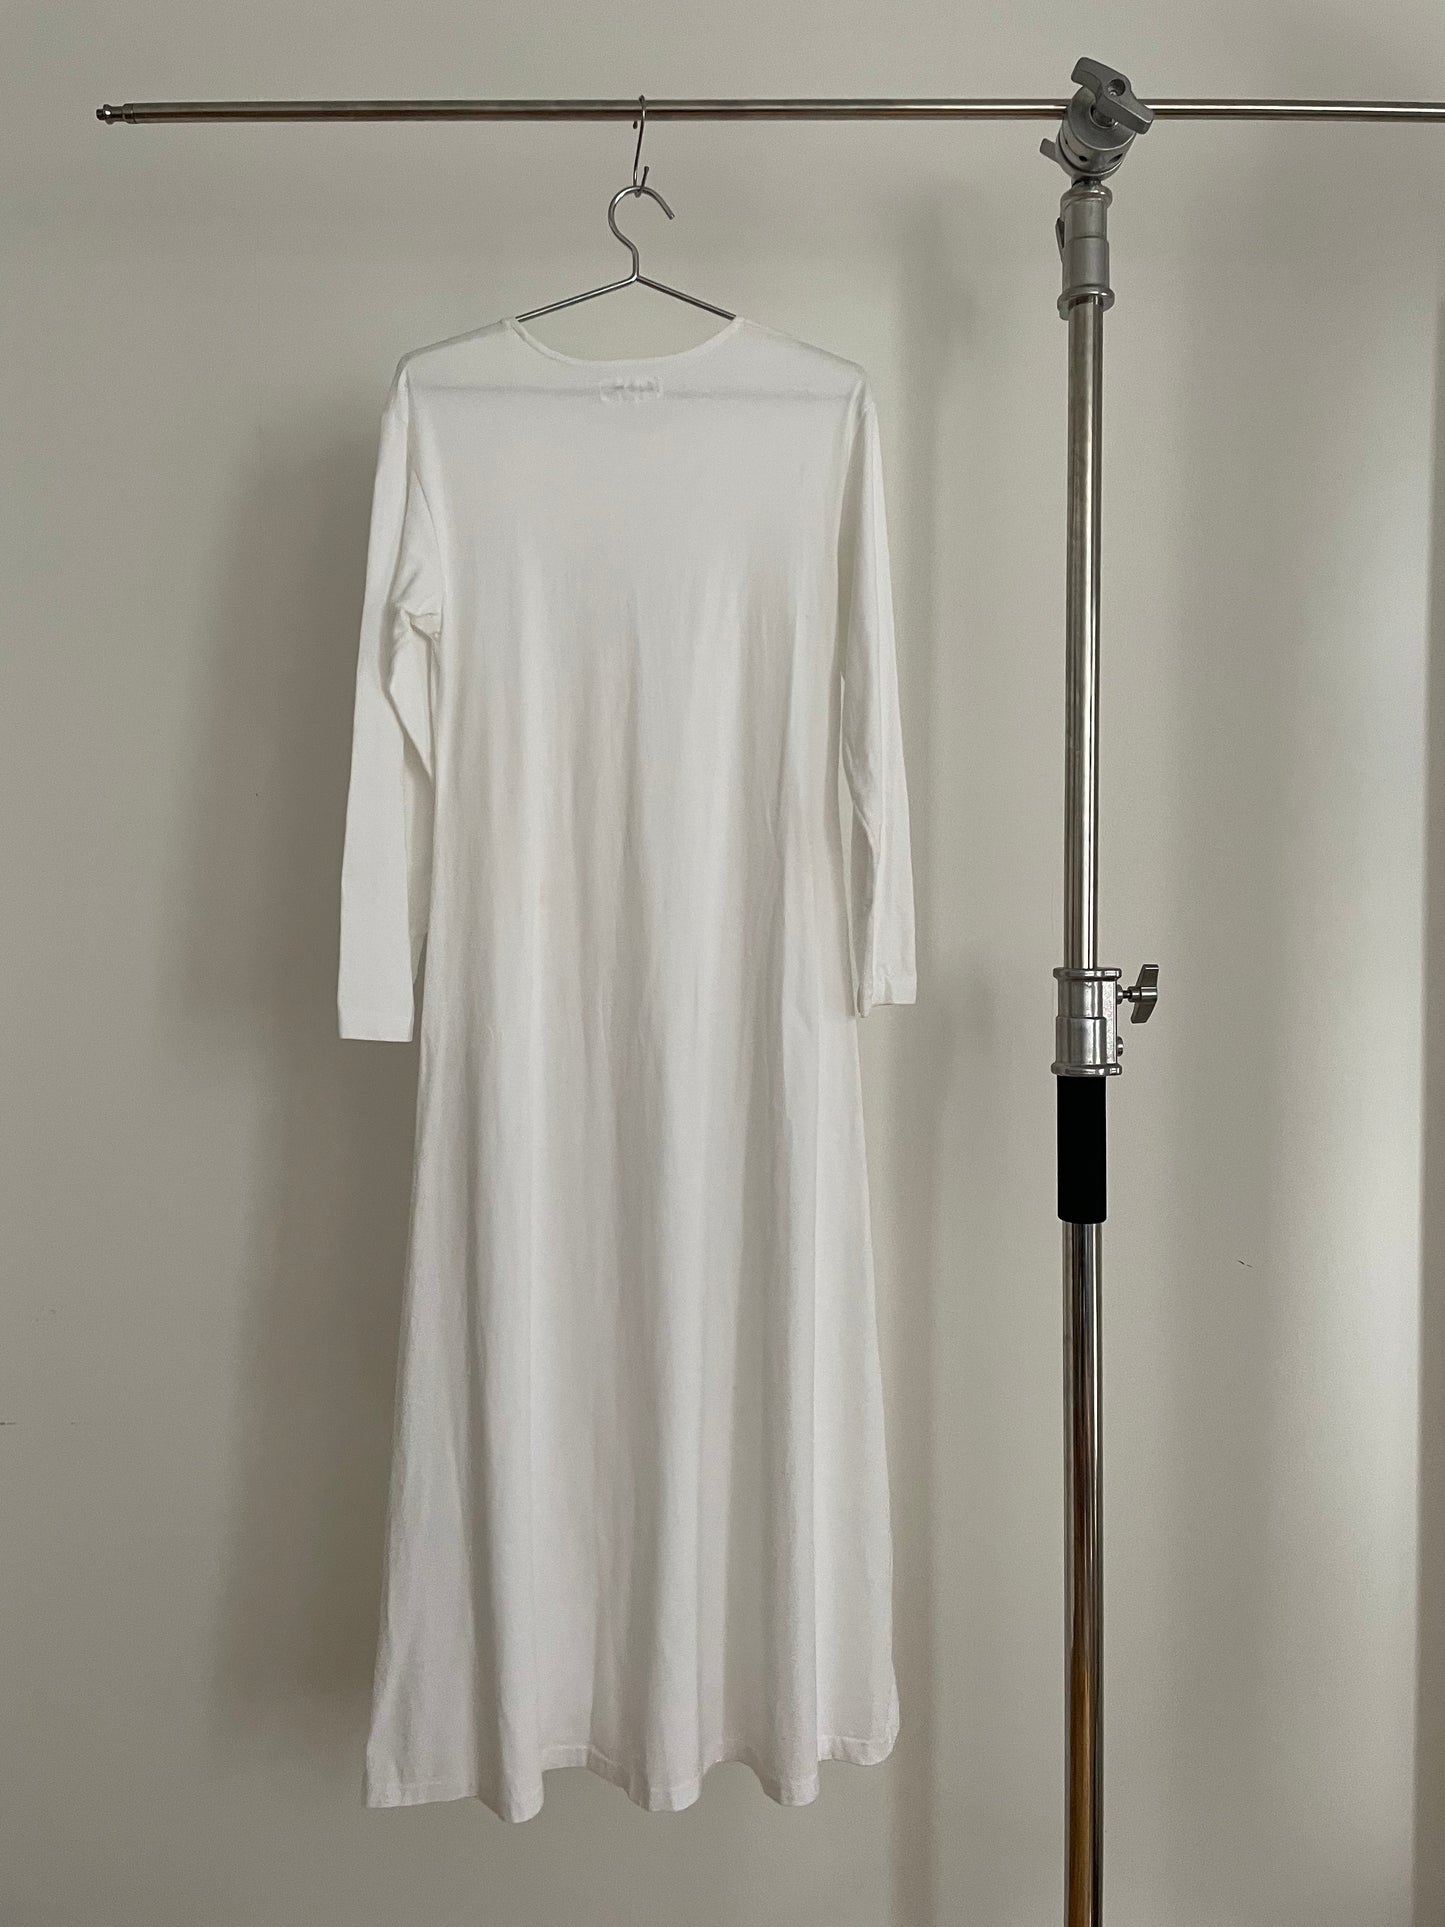 Yohji Yamamoto white long sleeve t-shirt dress